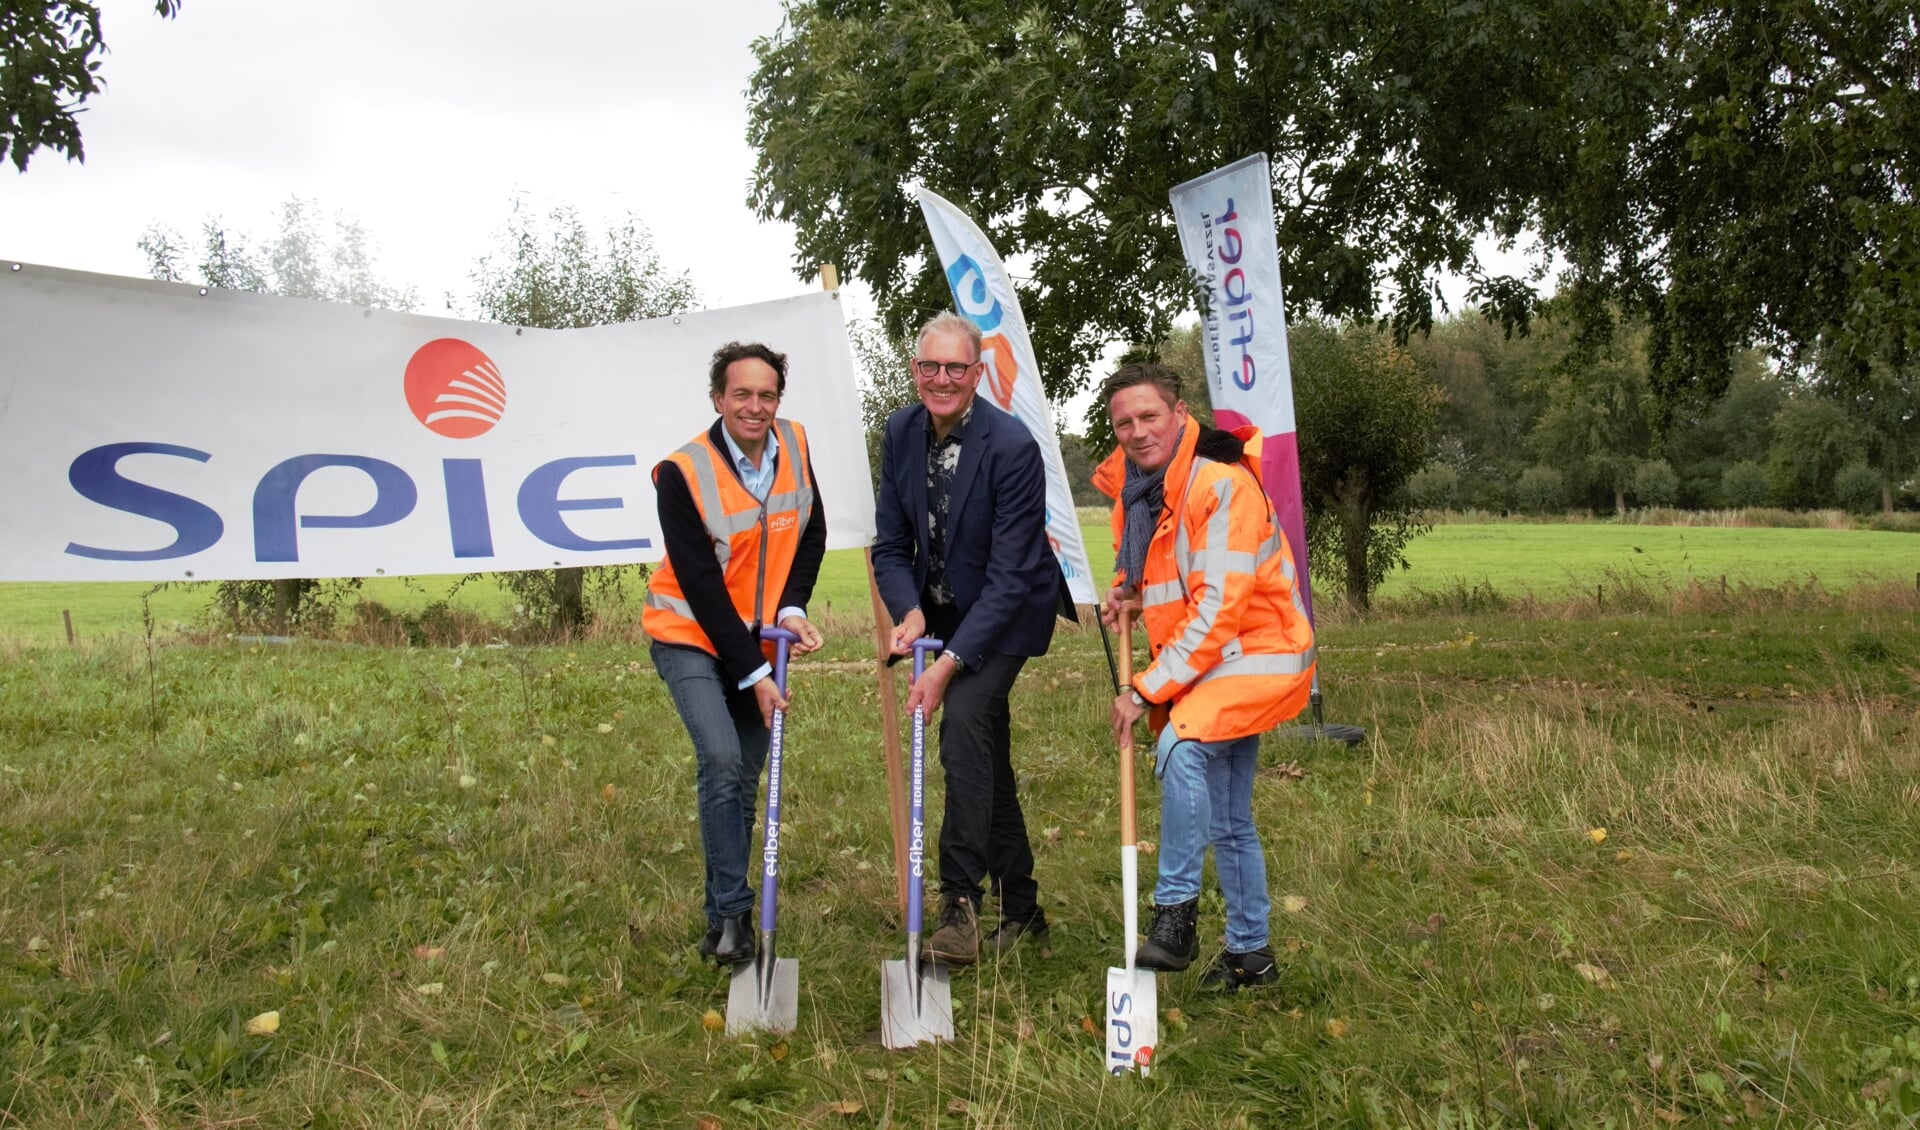 De eerste schop ging afgelopen week in de grond voor de aanleg van een glasvezelnetwerk in Uitgeest.  Floris van den Broek (E-Fiber), wethouder Schouten en Robert Doornbosch (Spie) klaarden de klus.